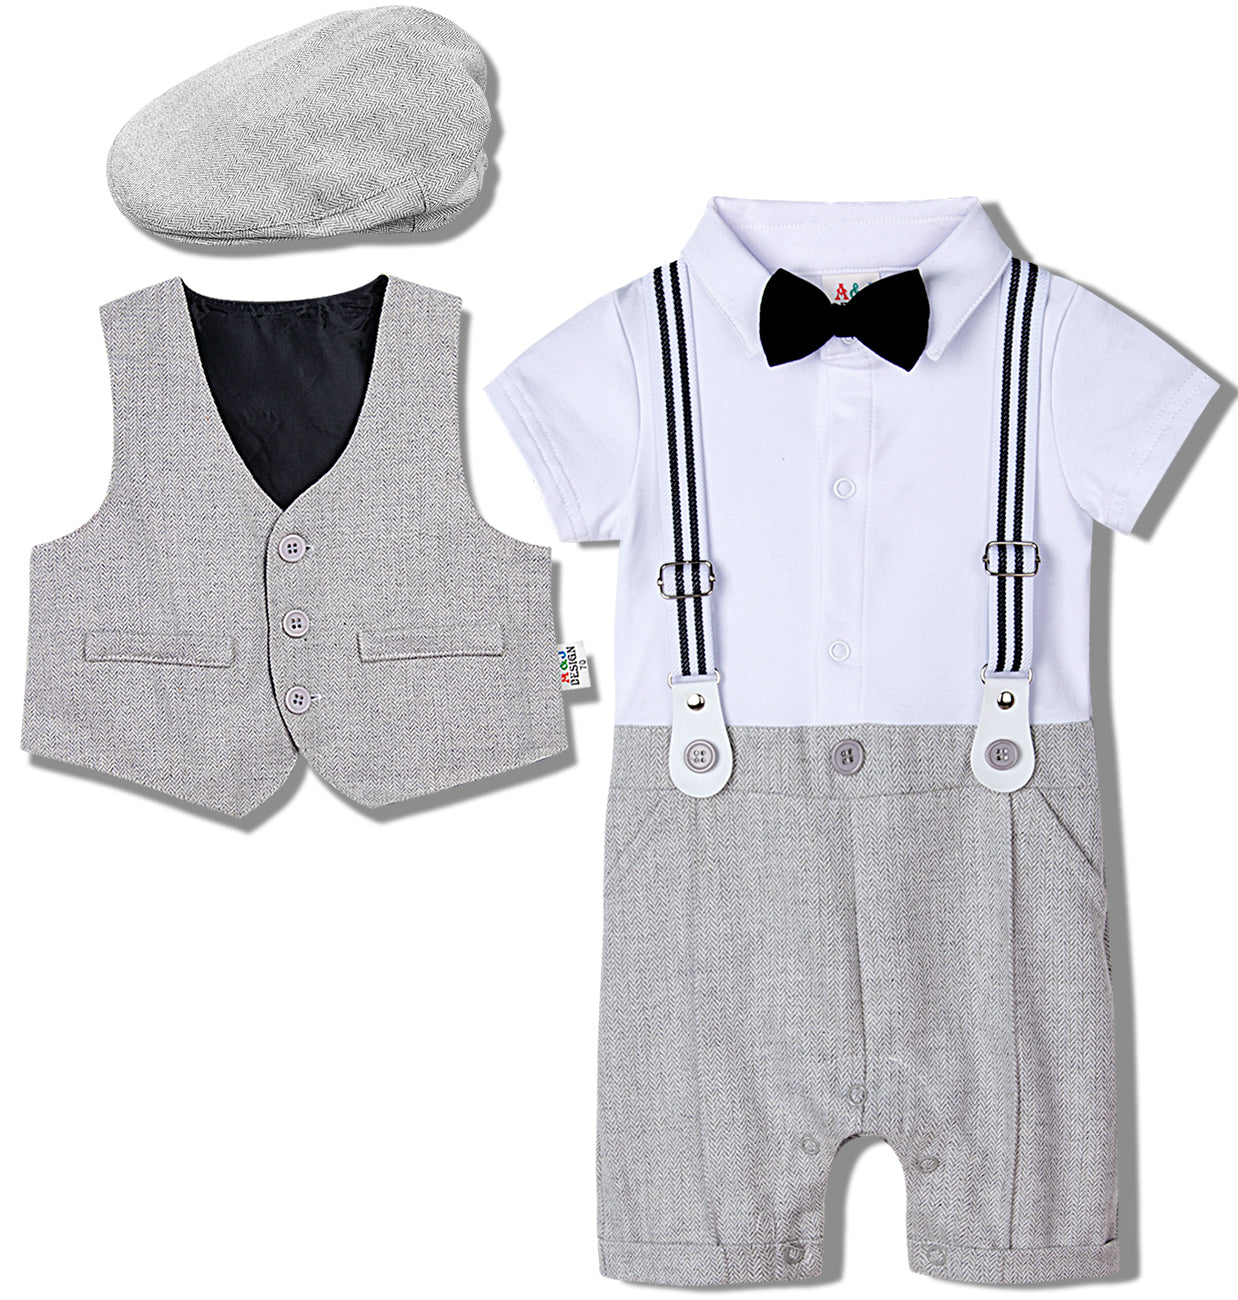 Baby boy suit. One piece gentleman suit